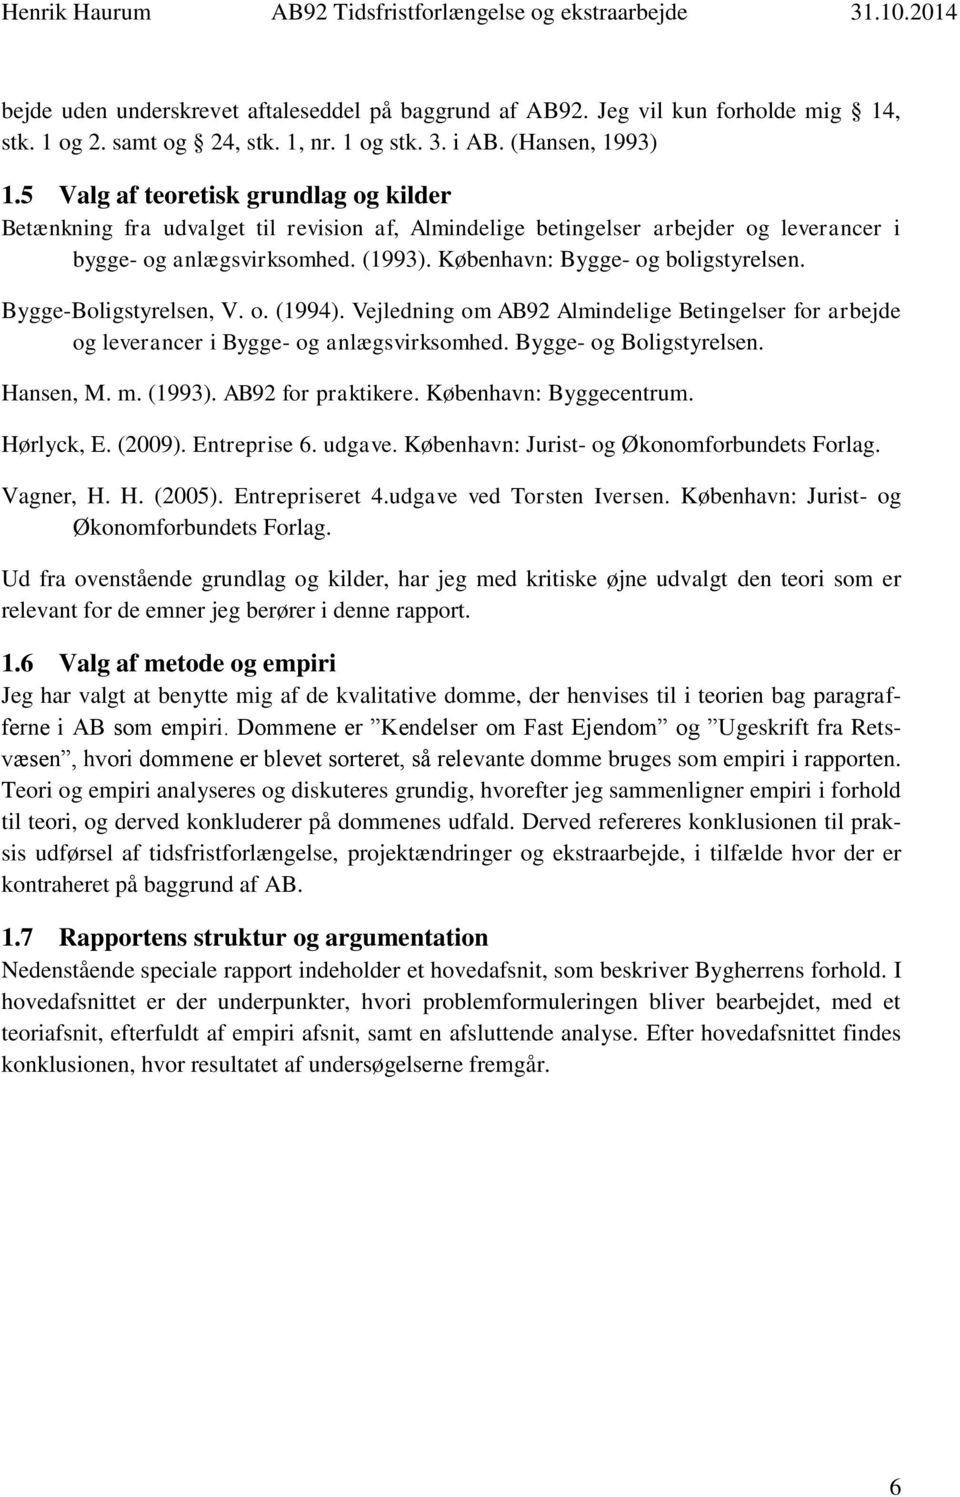 København: Bygge- og boligstyrelsen. Bygge-Boligstyrelsen, V. o. (1994). Vejledning om AB92 Almindelige Betingelser for arbejde og leverancer i Bygge- og anlægsvirksomhed. Bygge- og Boligstyrelsen.